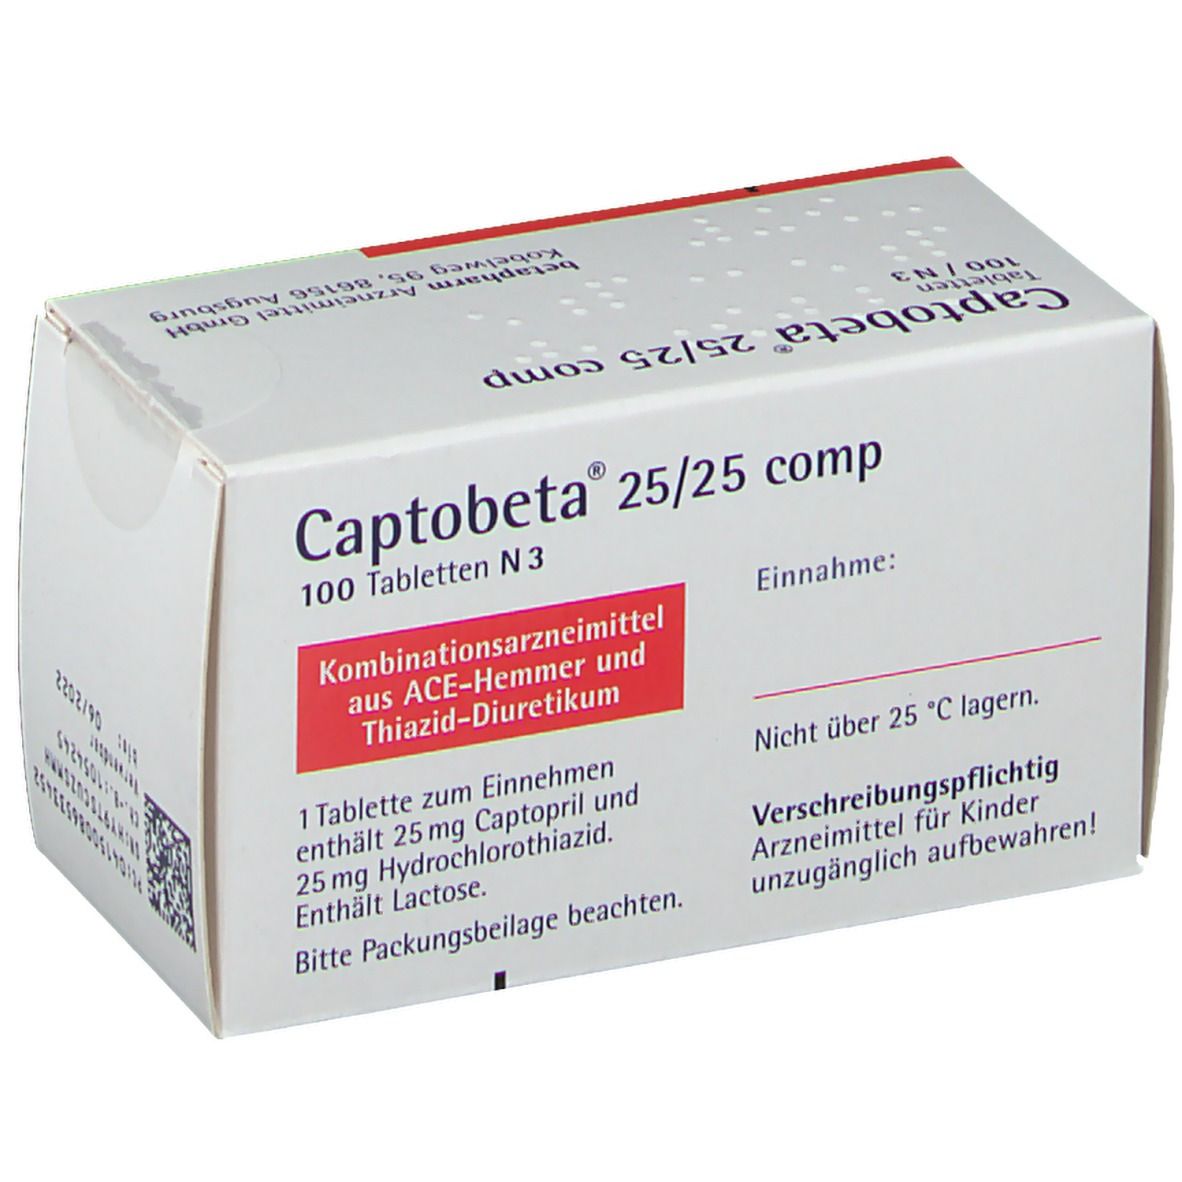 Captobeta® 25/25 comp